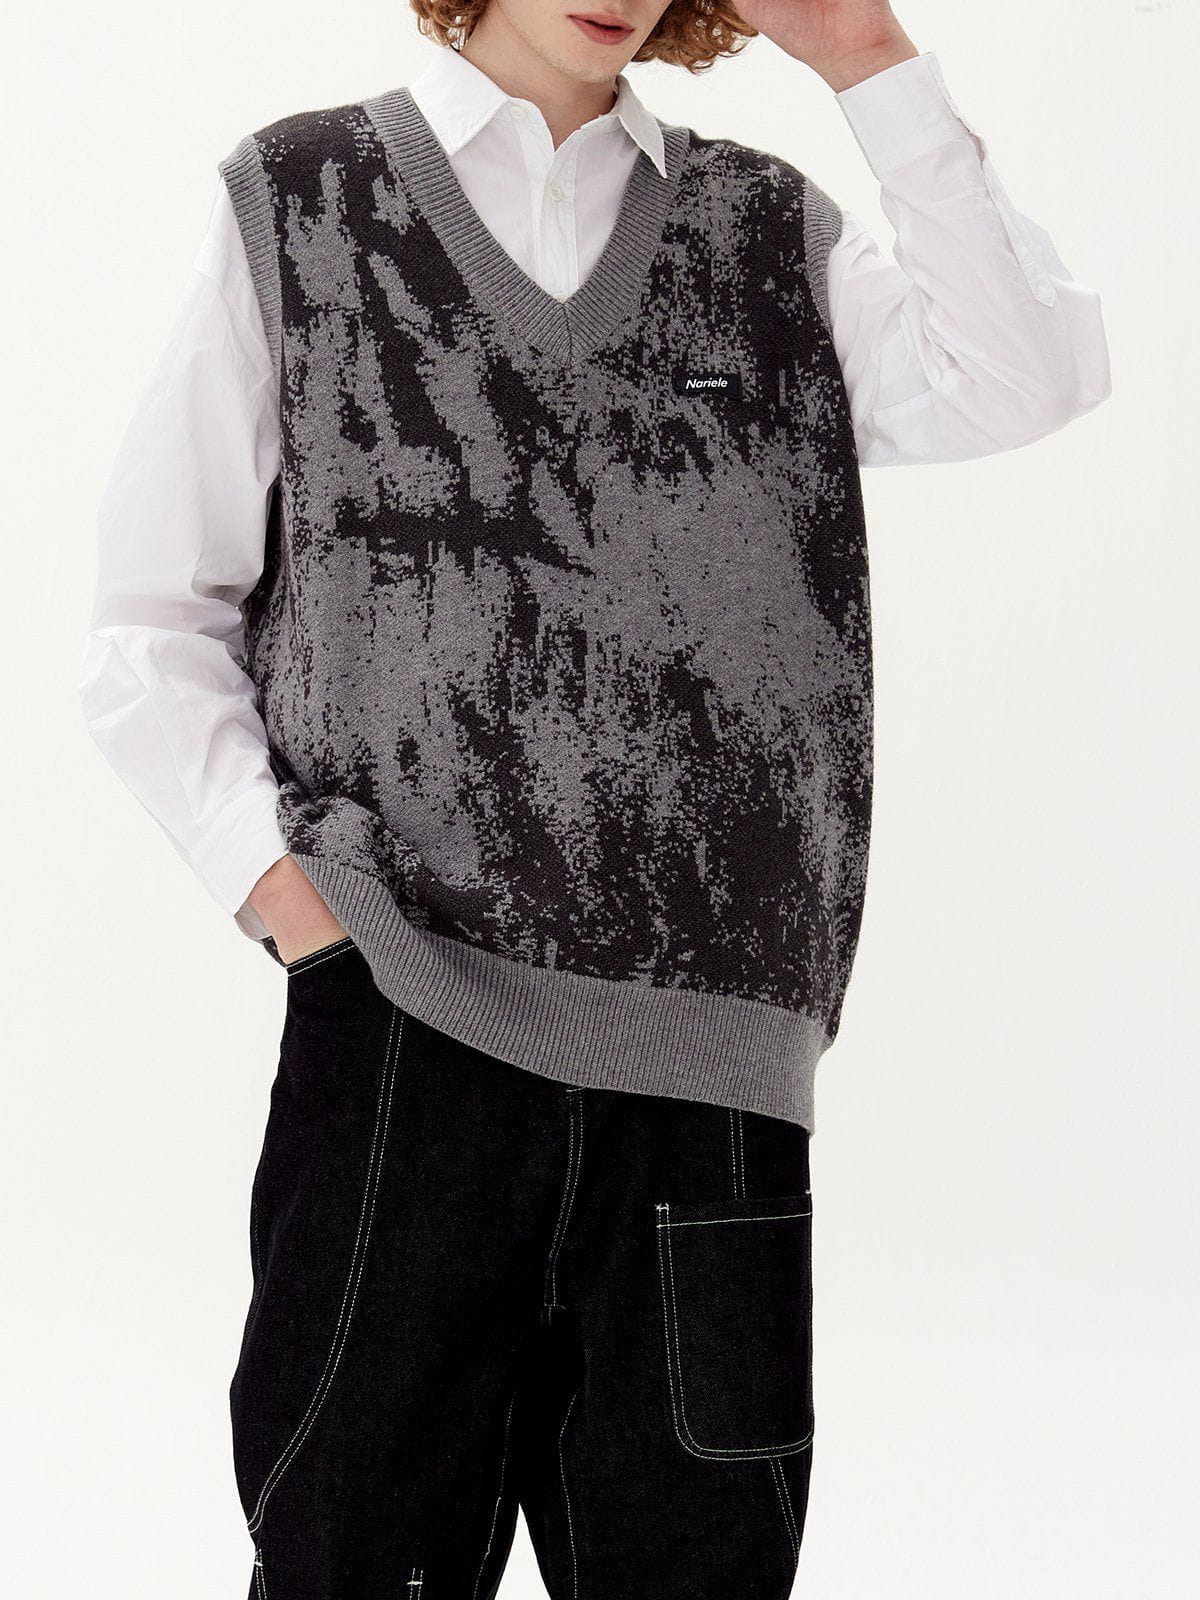 Eprezzy® - Tie Dye Jacquard Sweater Vest Streetwear Fashion - eprezzy.com